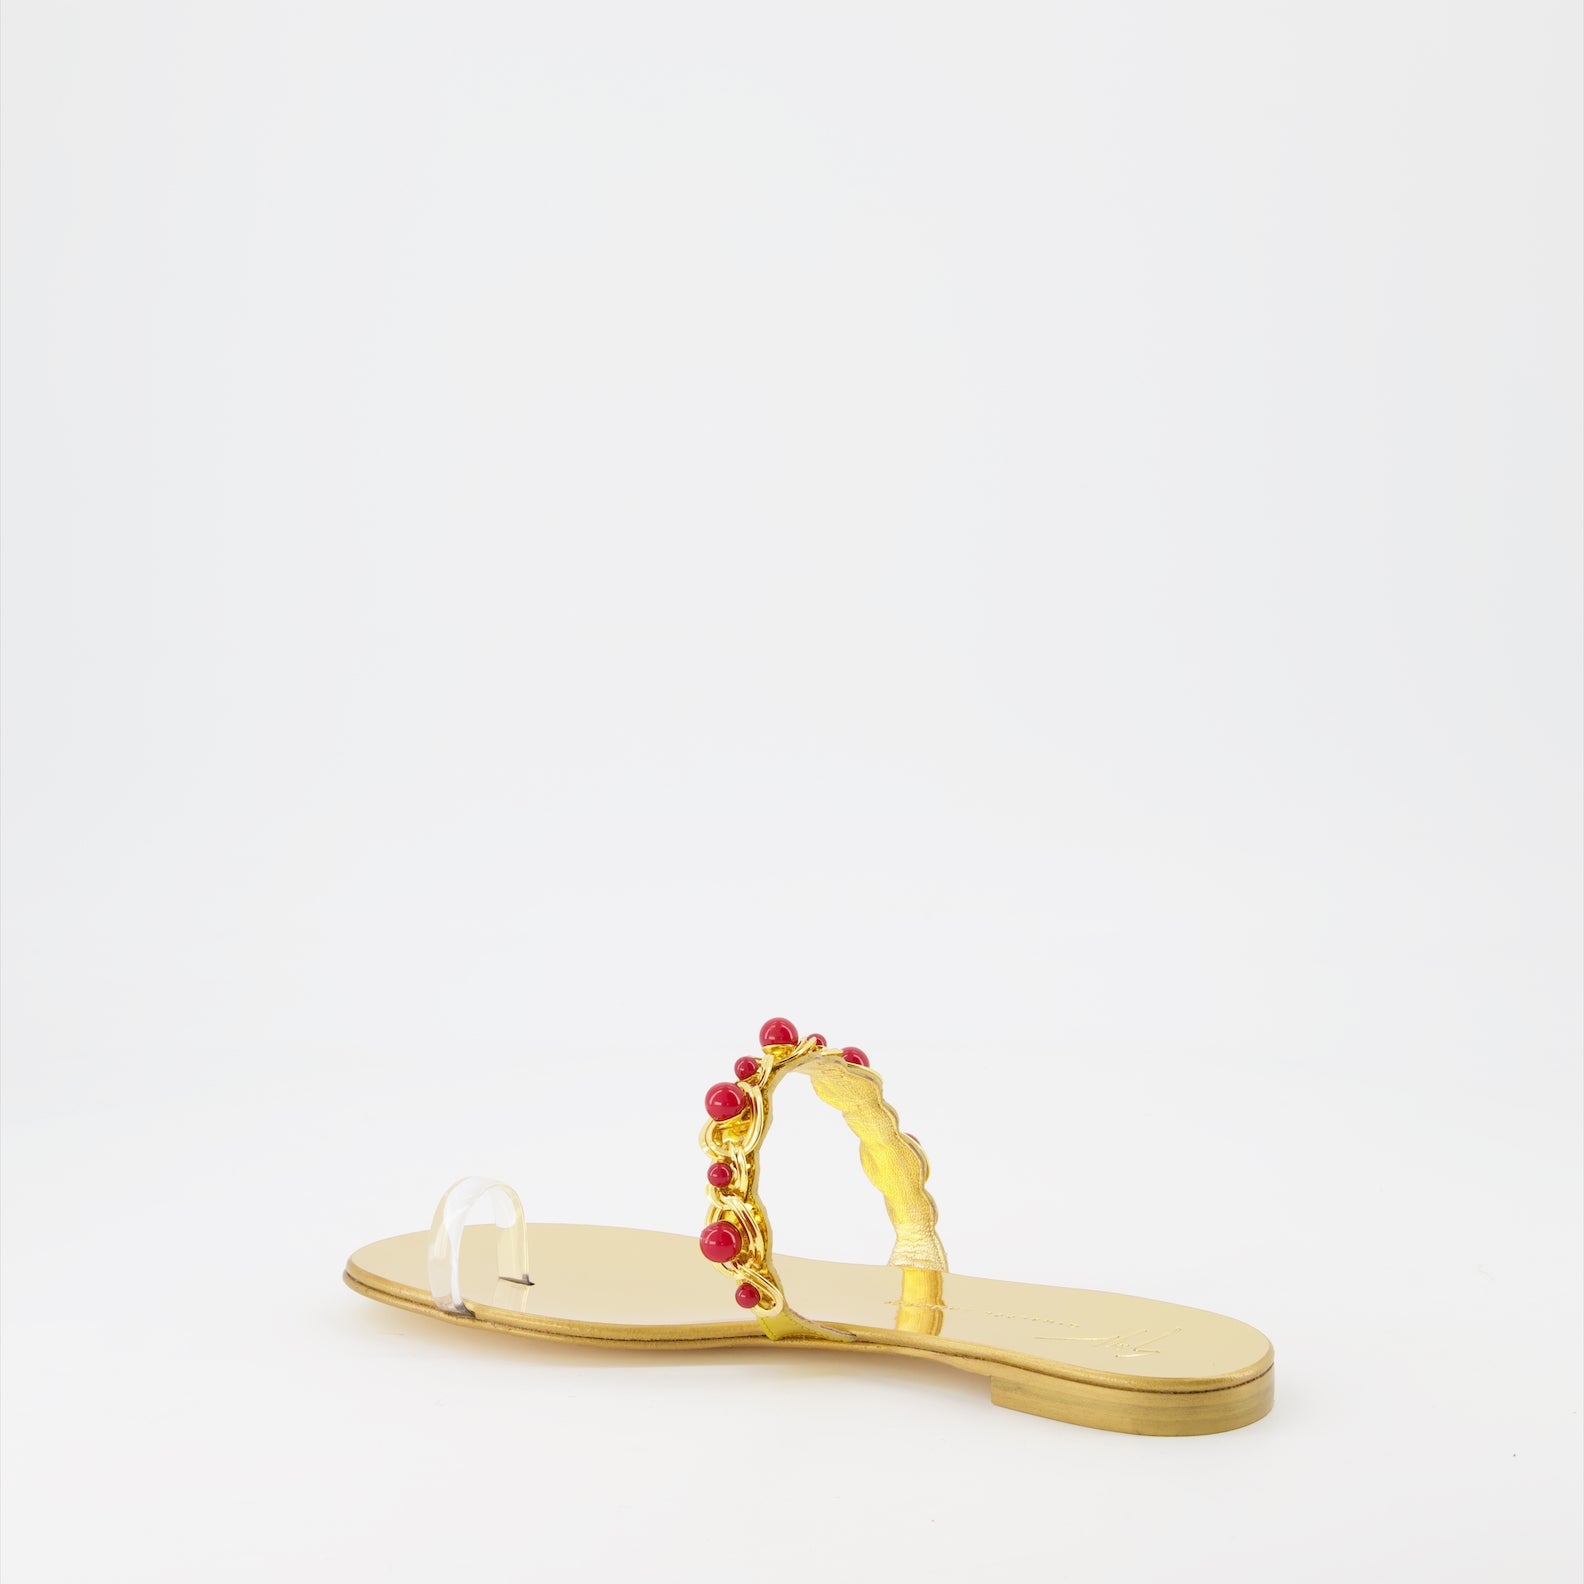 Marguerithe sandals